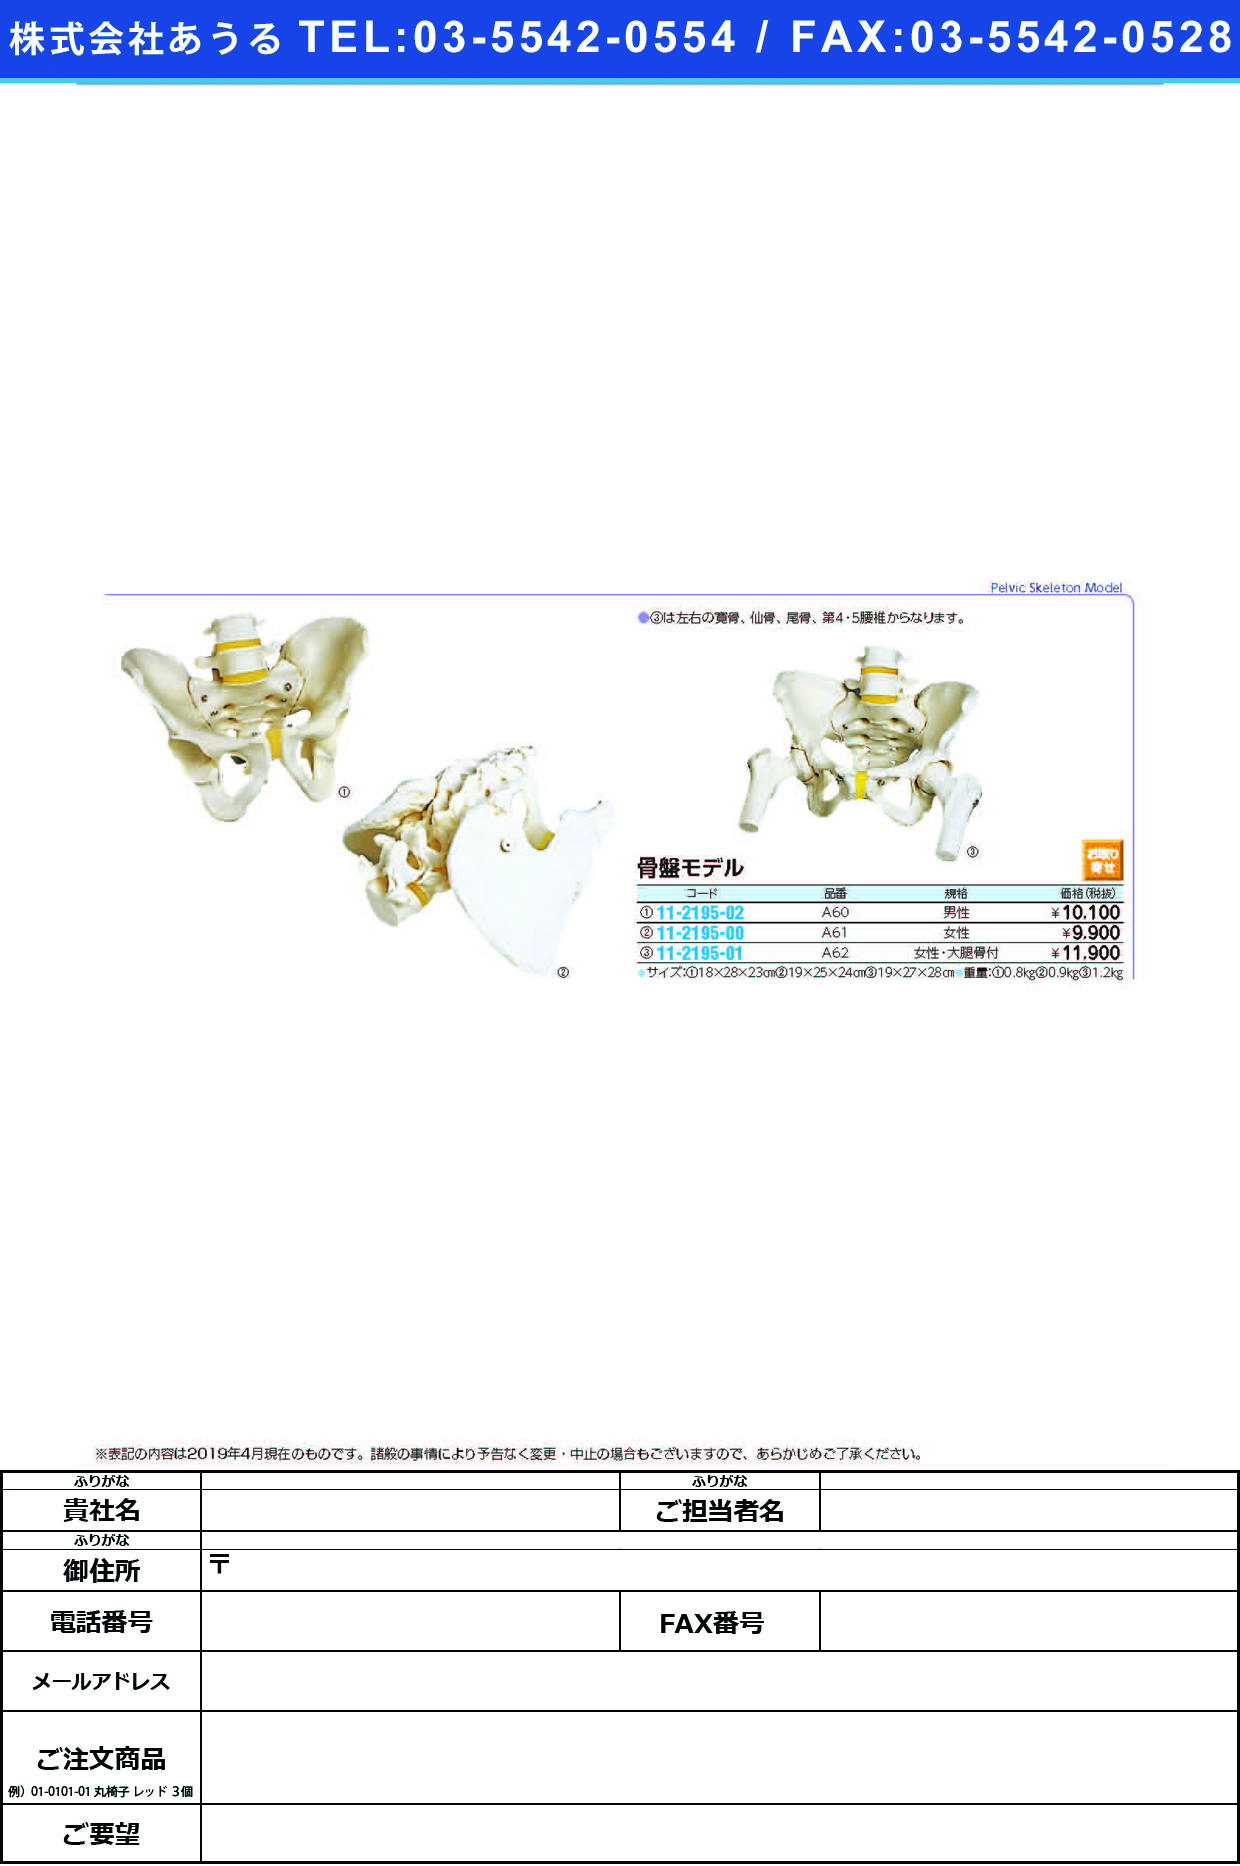 (11-2195-00)骨盤モデル（女性） A61(19X25X24CM) ｺﾂﾊﾞﾝﾓﾃﾞﾙ(京都科学)【1台単位】【2019年カタログ商品】